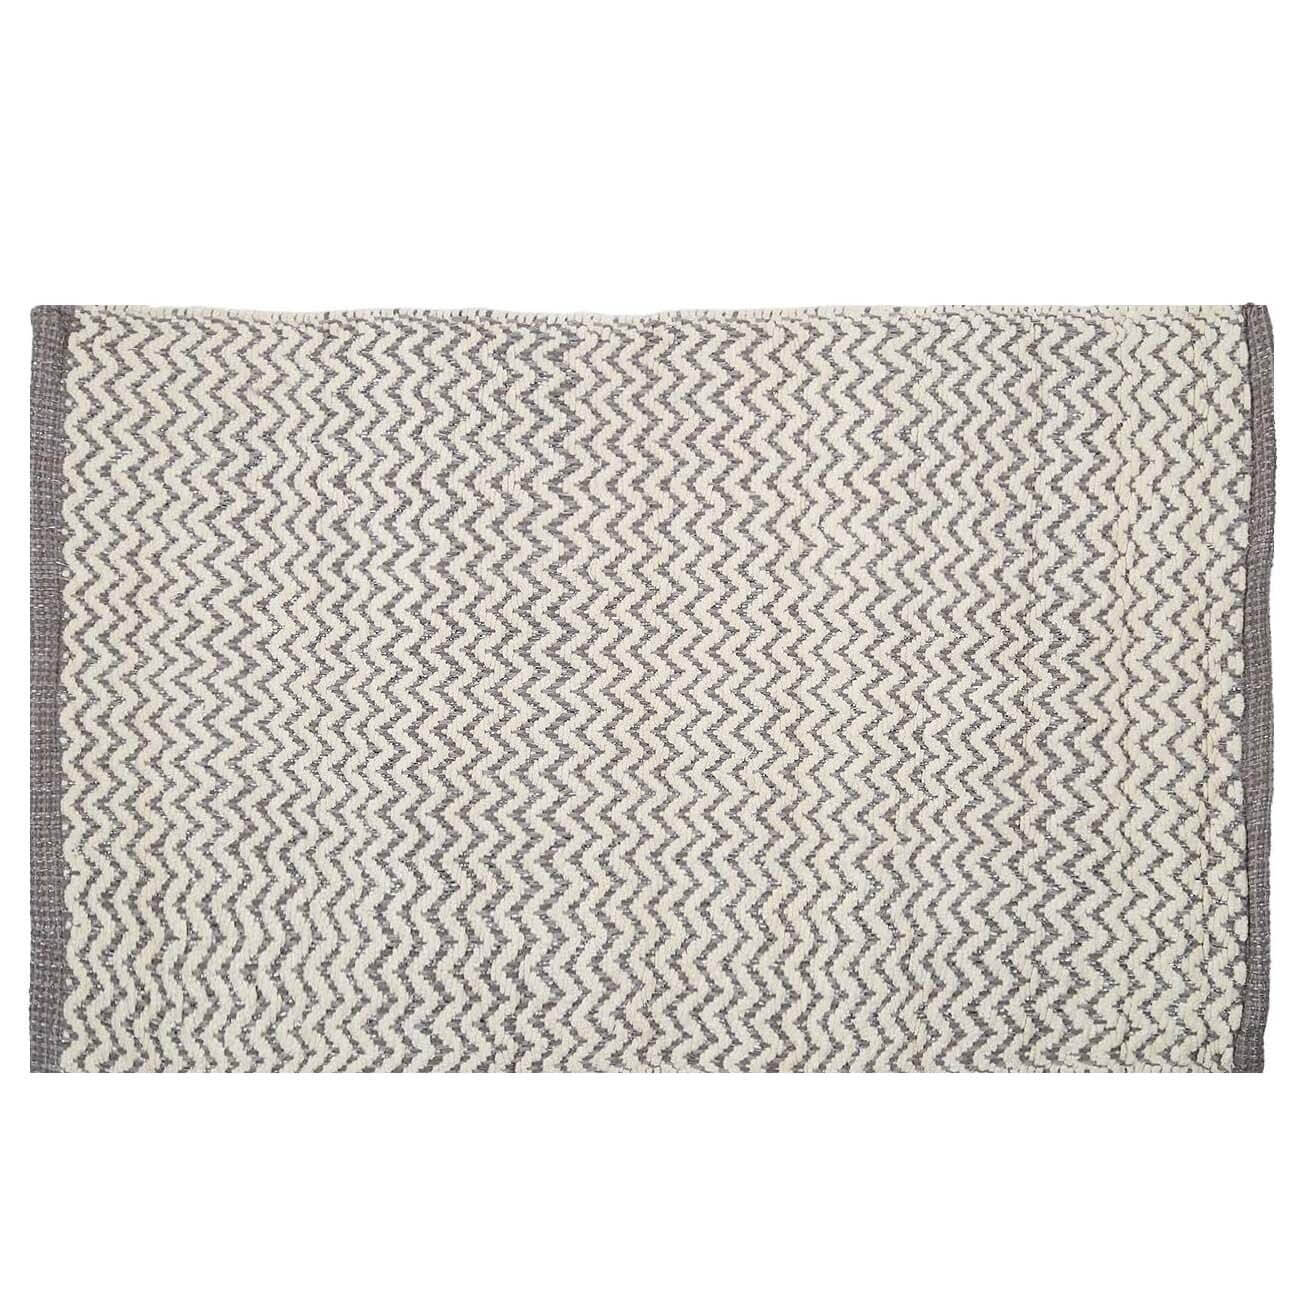 Коврик, 50х80 см, хлопок, бело-серый, Зигзаги с люрексом, Shiny threads изображение № 1